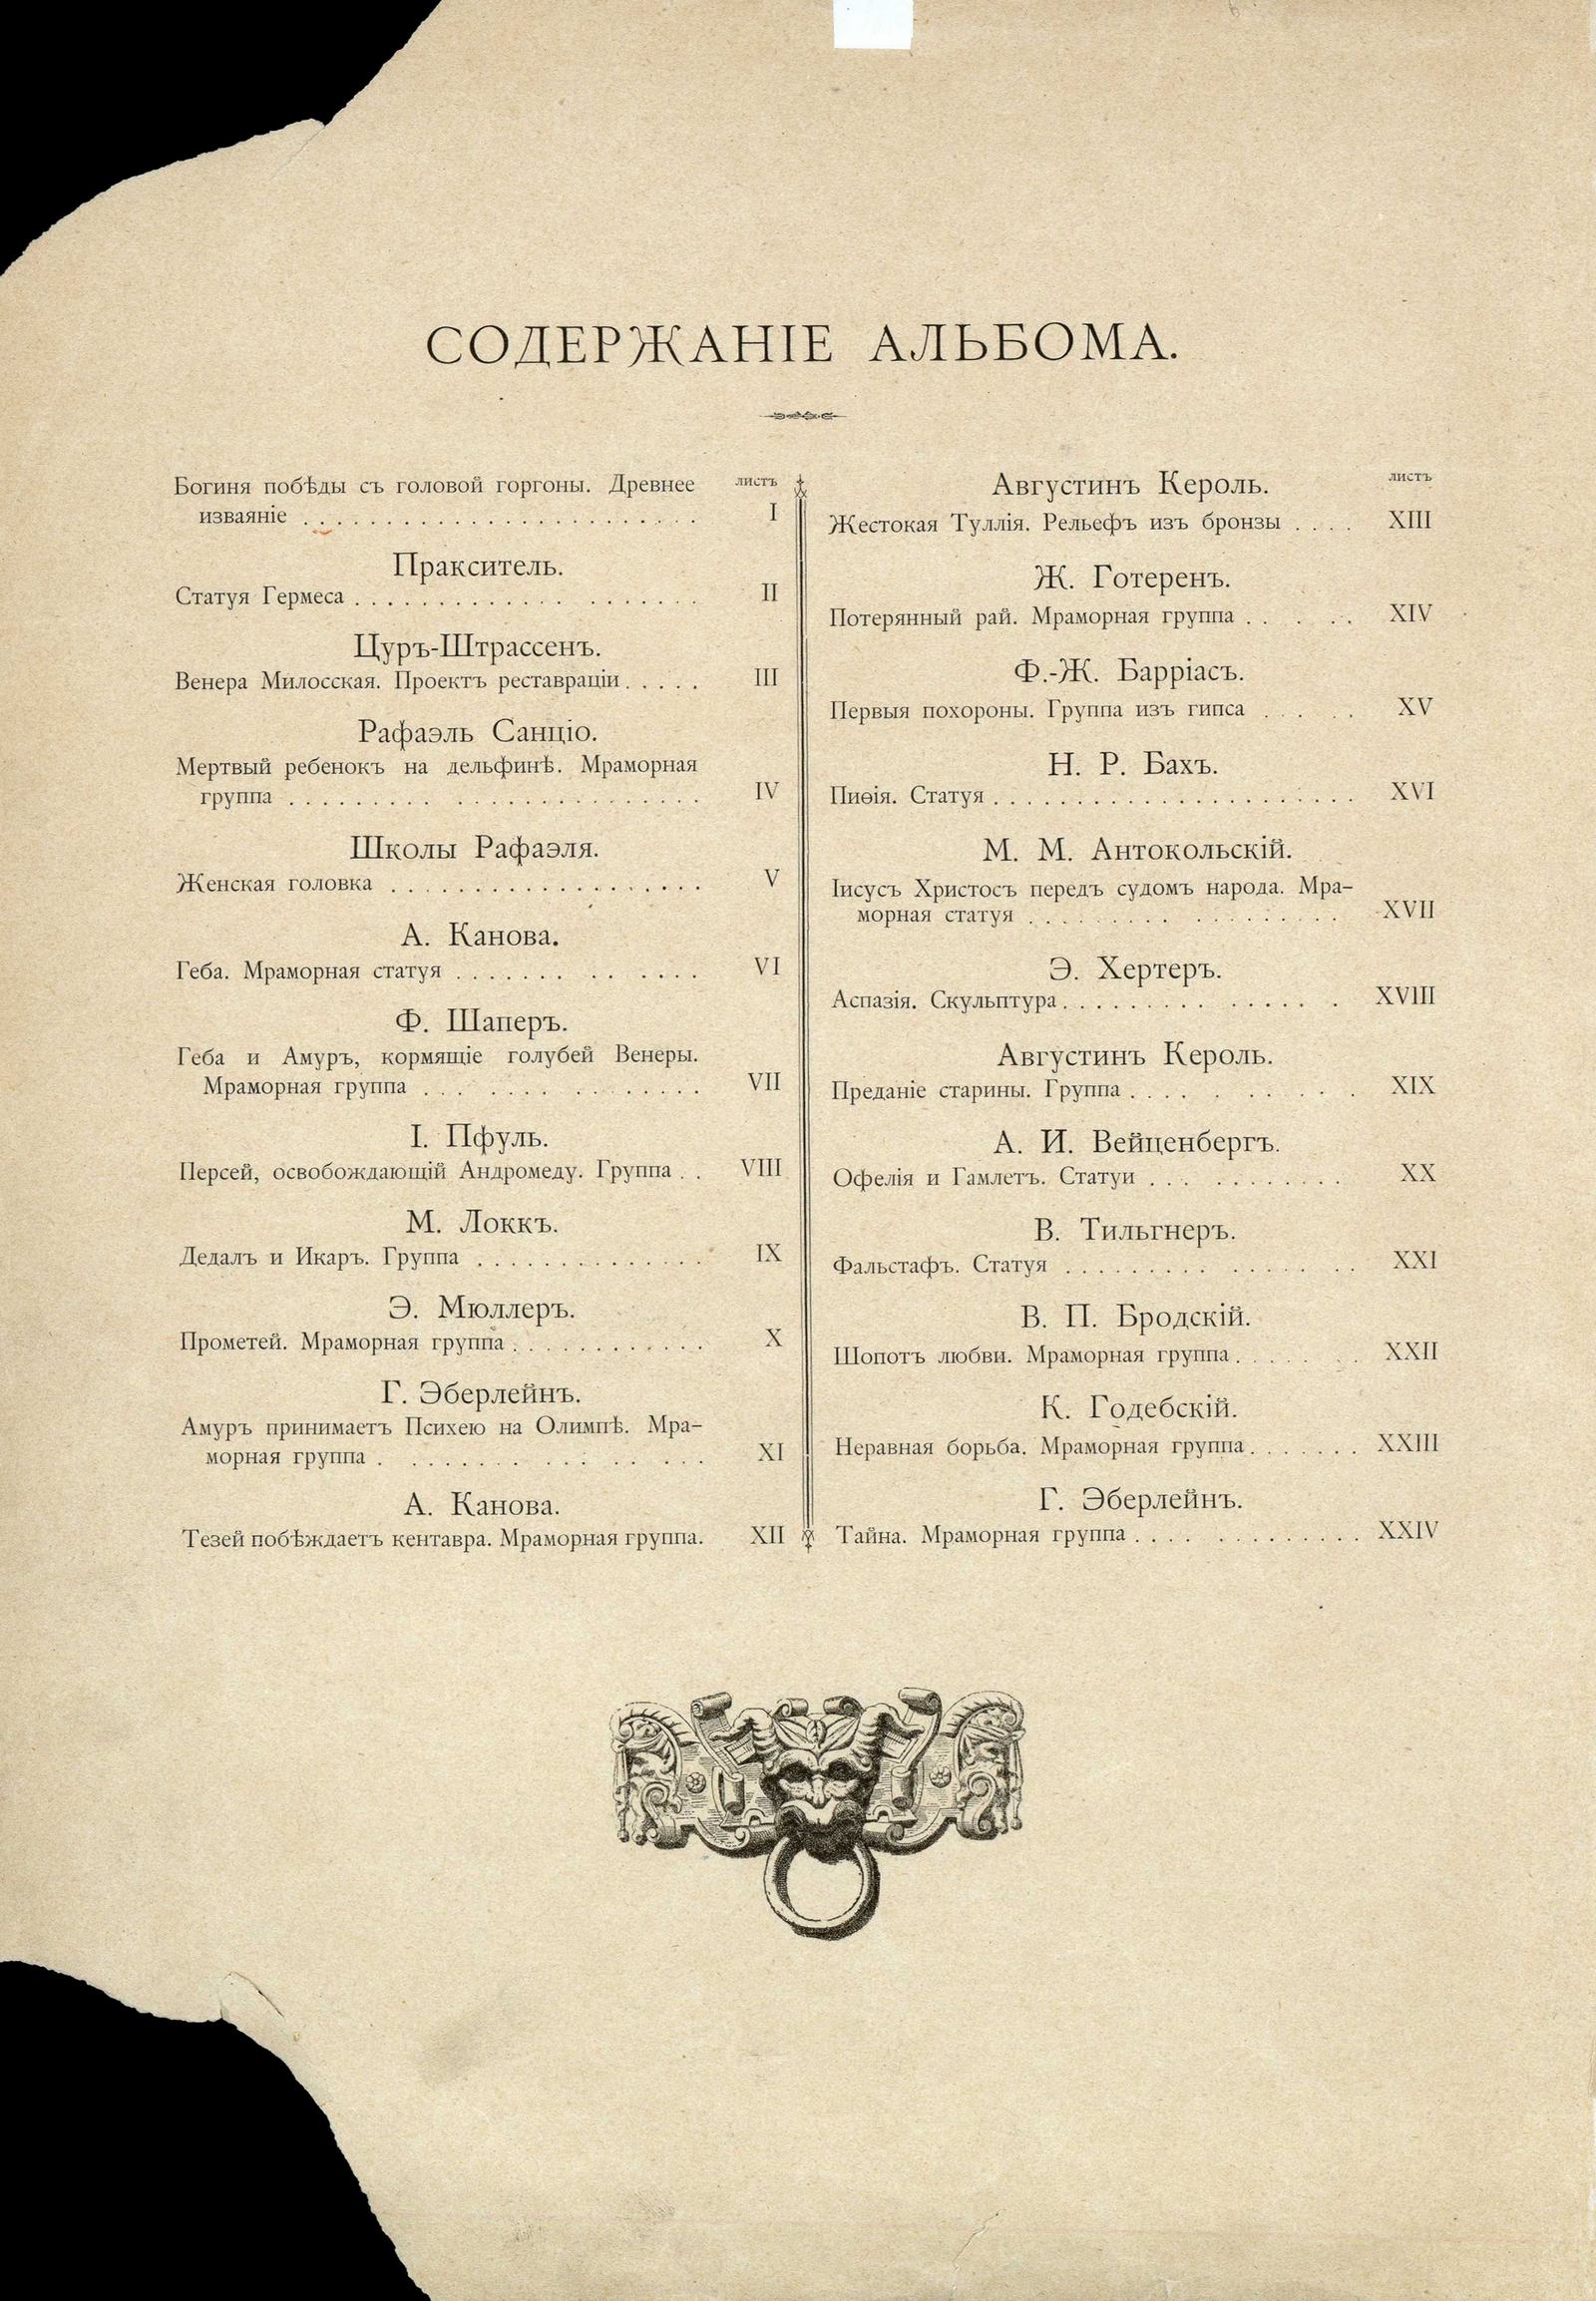 Альбом скульптурных произведений в гравюрах с работ русских и иностранных ваятелей. 1892